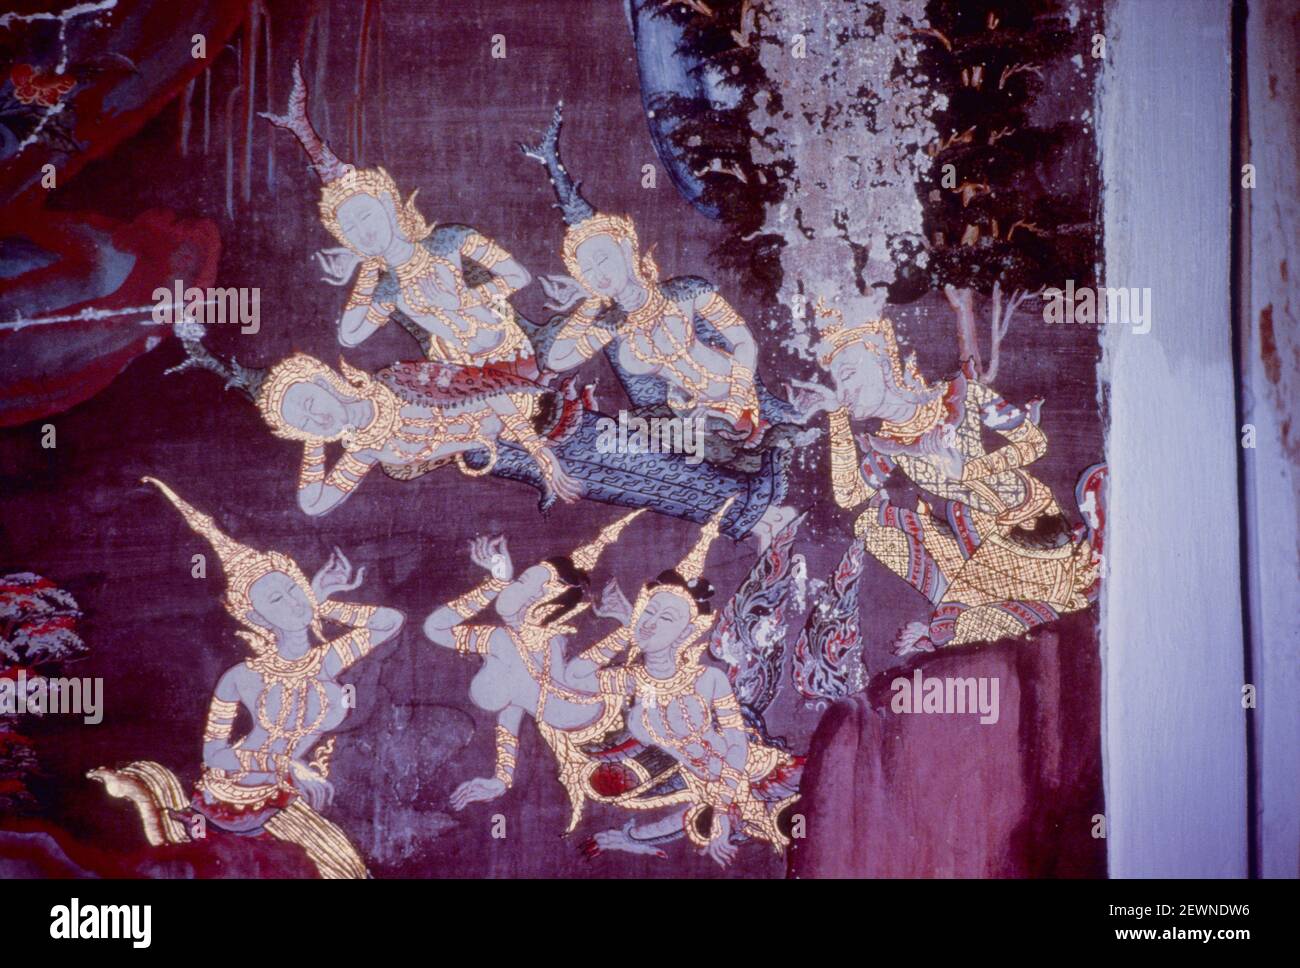 Les parents de SAMA et le roi Paliyakka saule sur le cadavre de Sama avec des divinités et des kinnaras de forêt, Wat Bang Yikan, mur du Nord, Thonburi, Bangkok, Thaï Banque D'Images